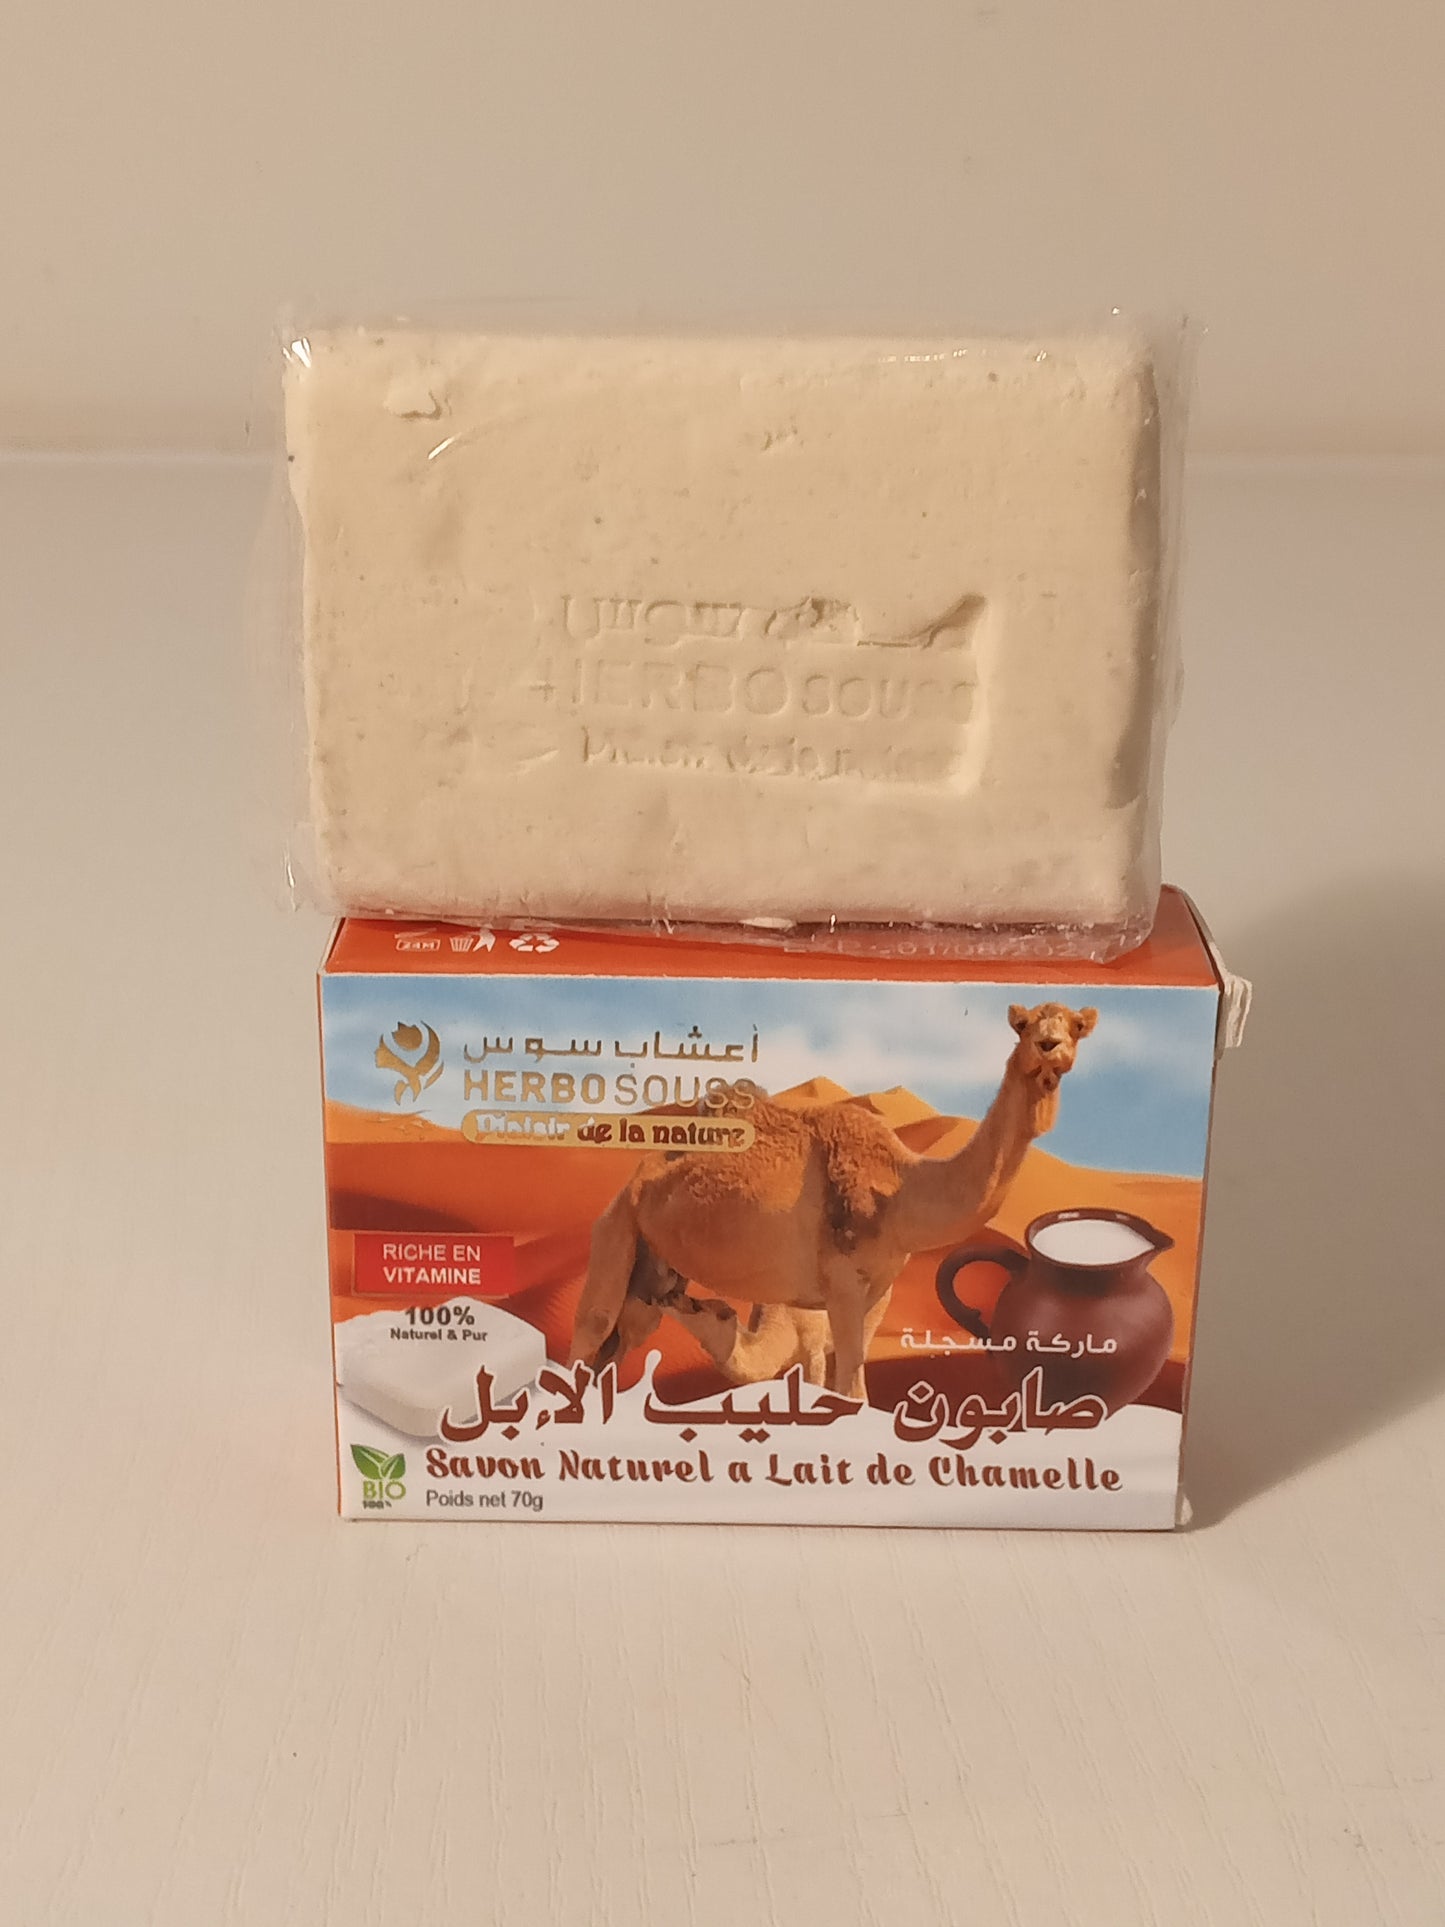 Natural camel milk soap